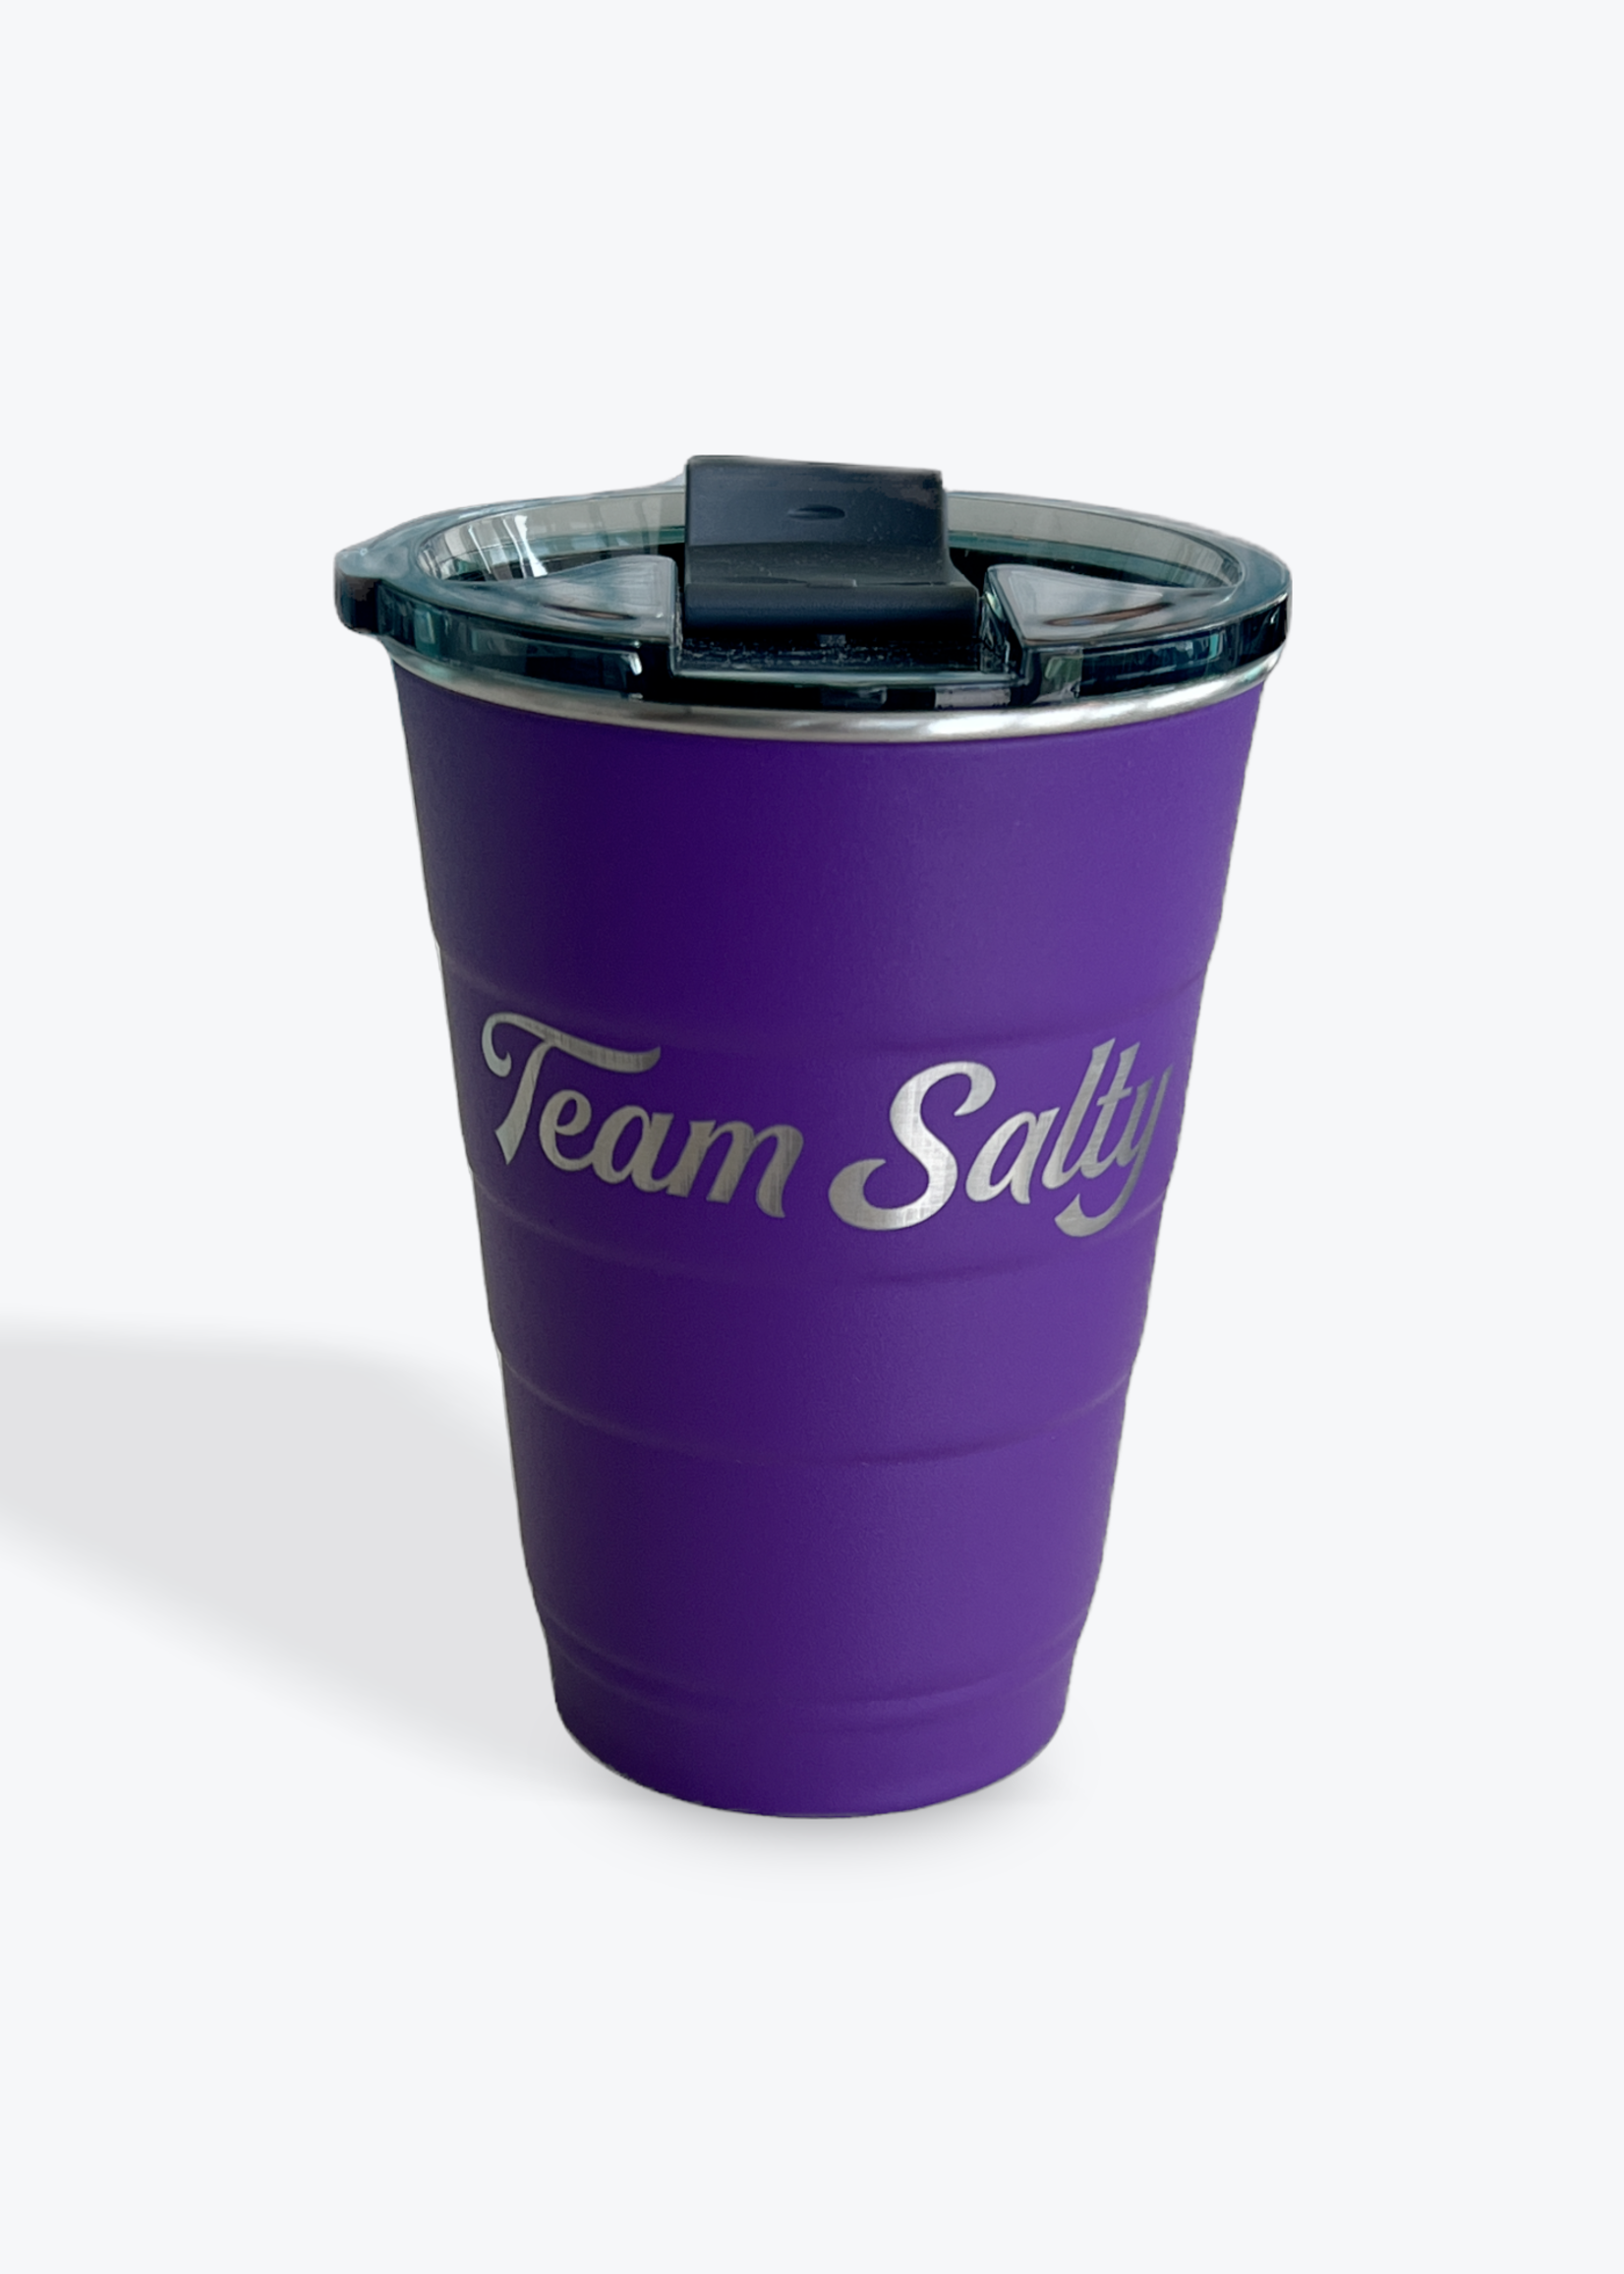 https://cdn.shoplightspeed.com/shops/617903/files/57161662/1652x2313x1/team-salty-team-salty-reusable-solo-cup-16oz.jpg